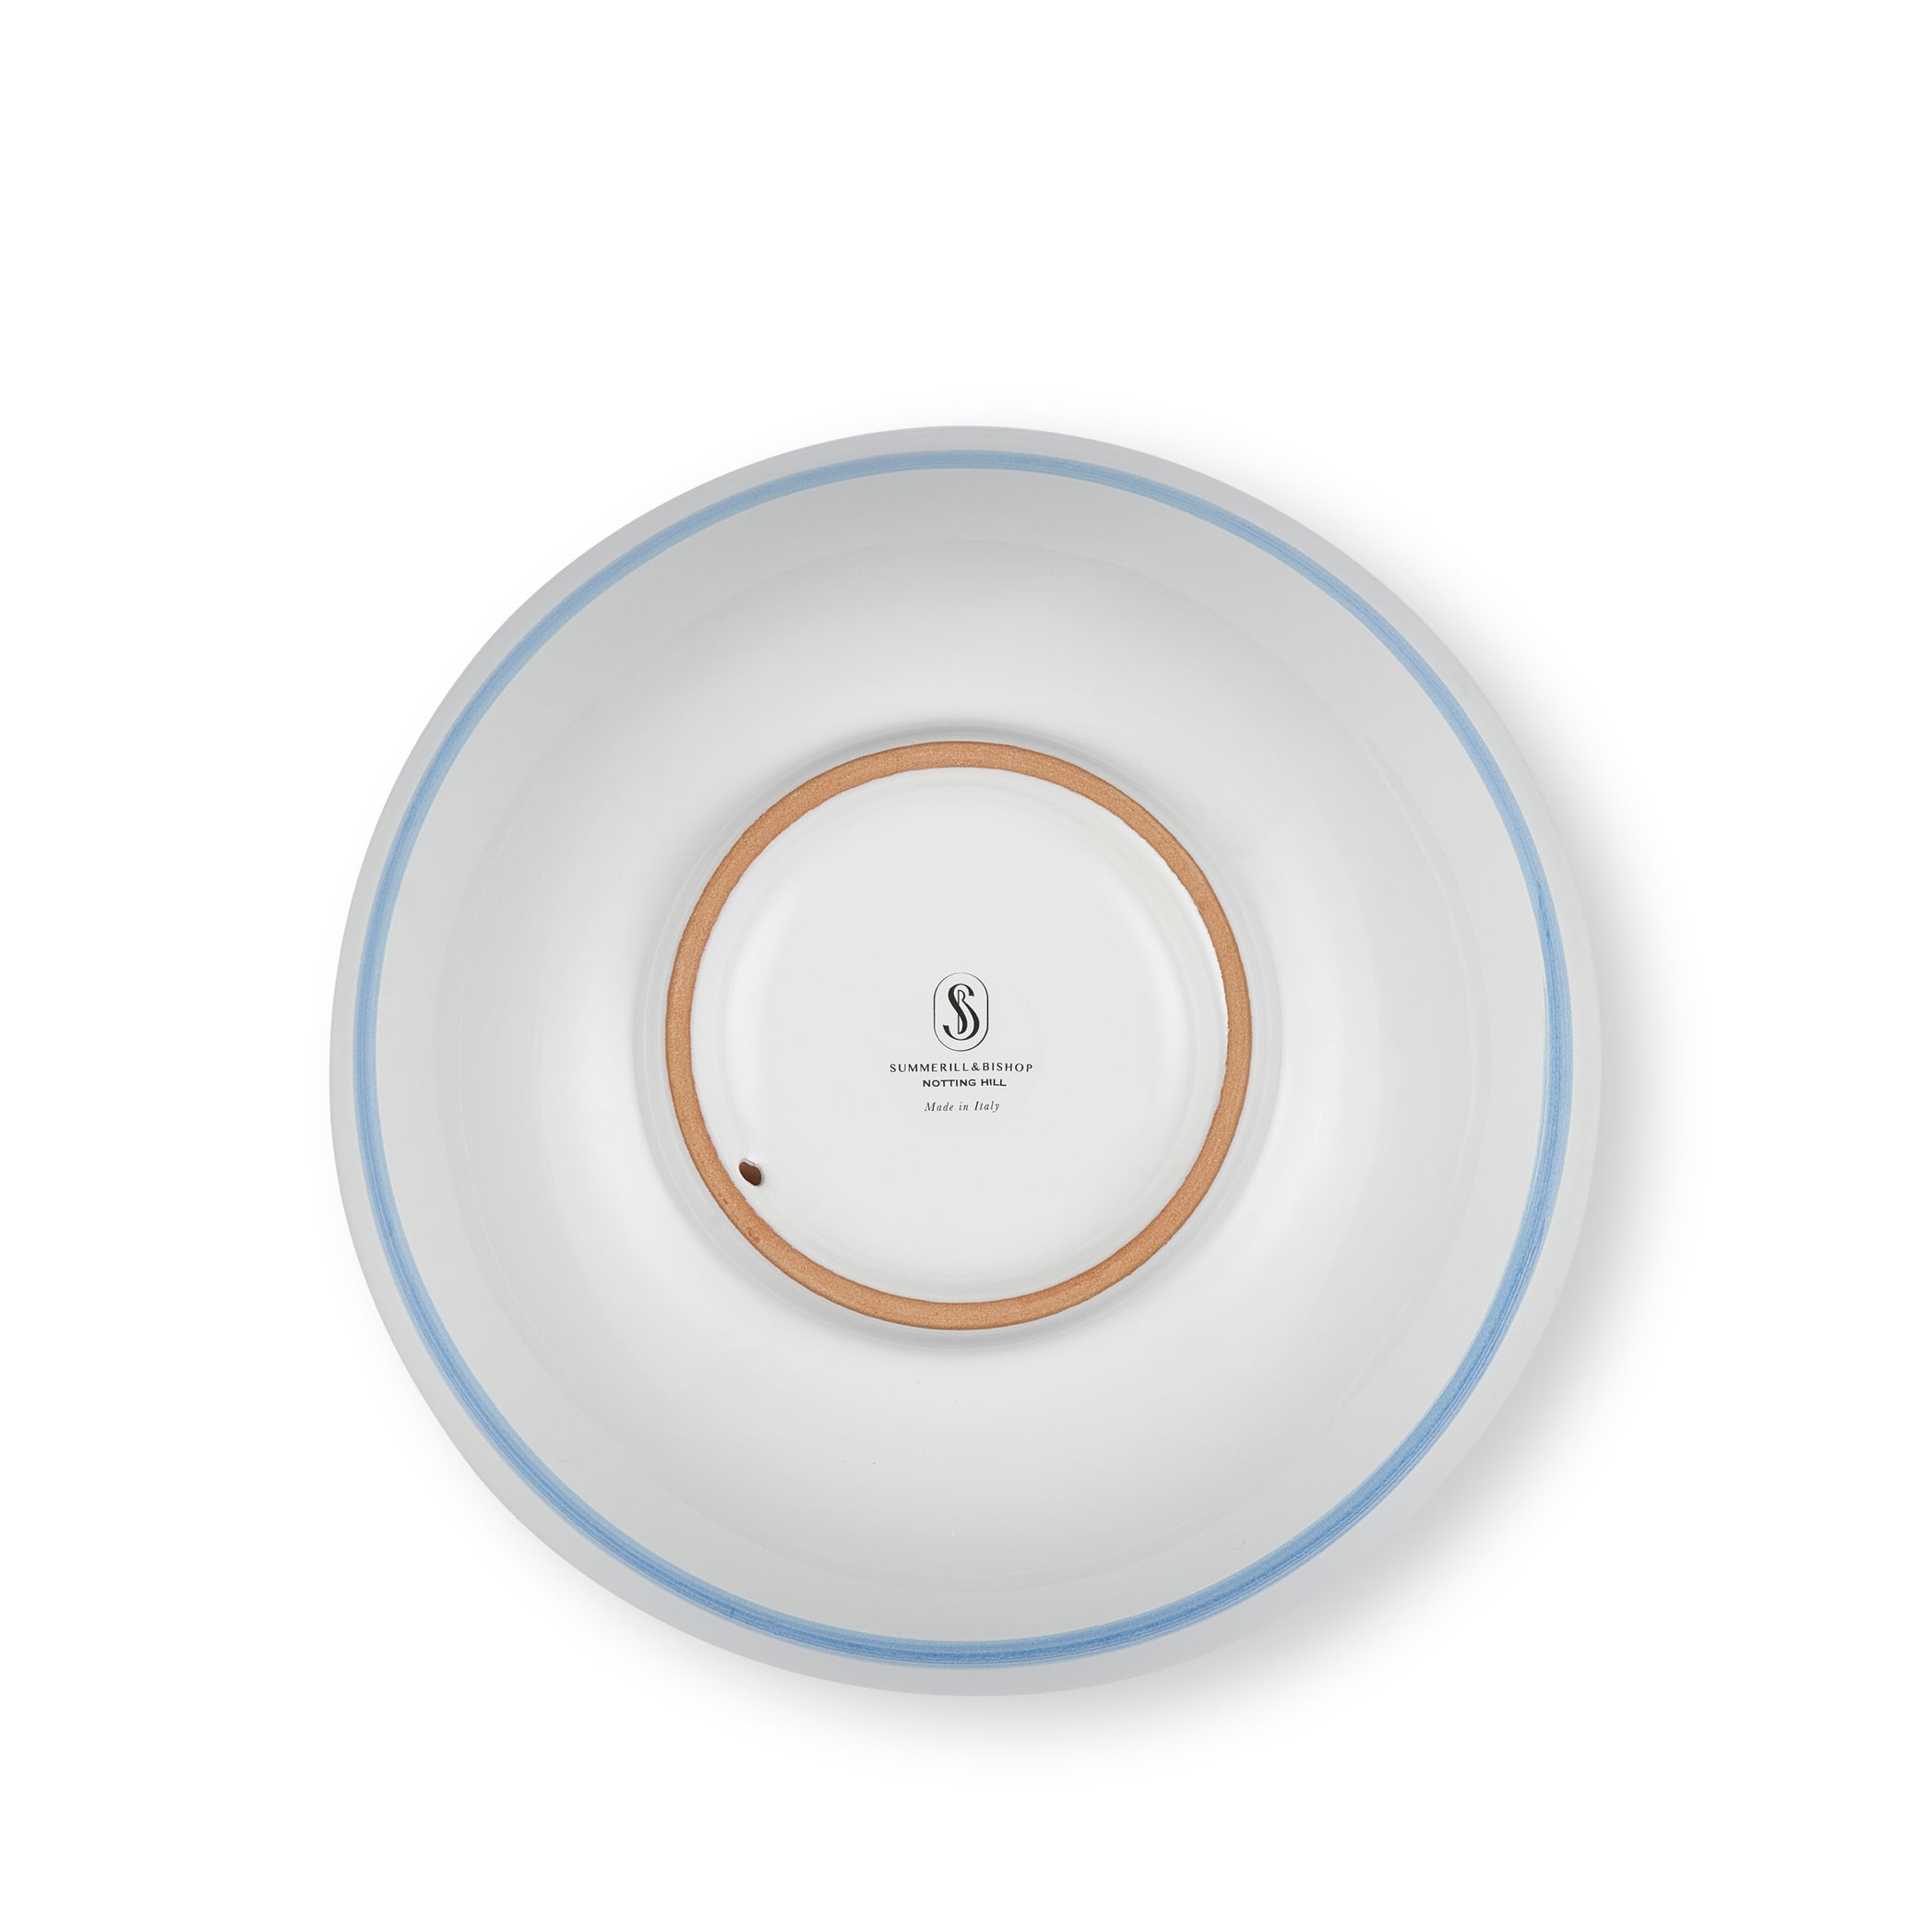 S&B 'Brushed' Ceramic Serving Bowl in Light Blue, 30cm